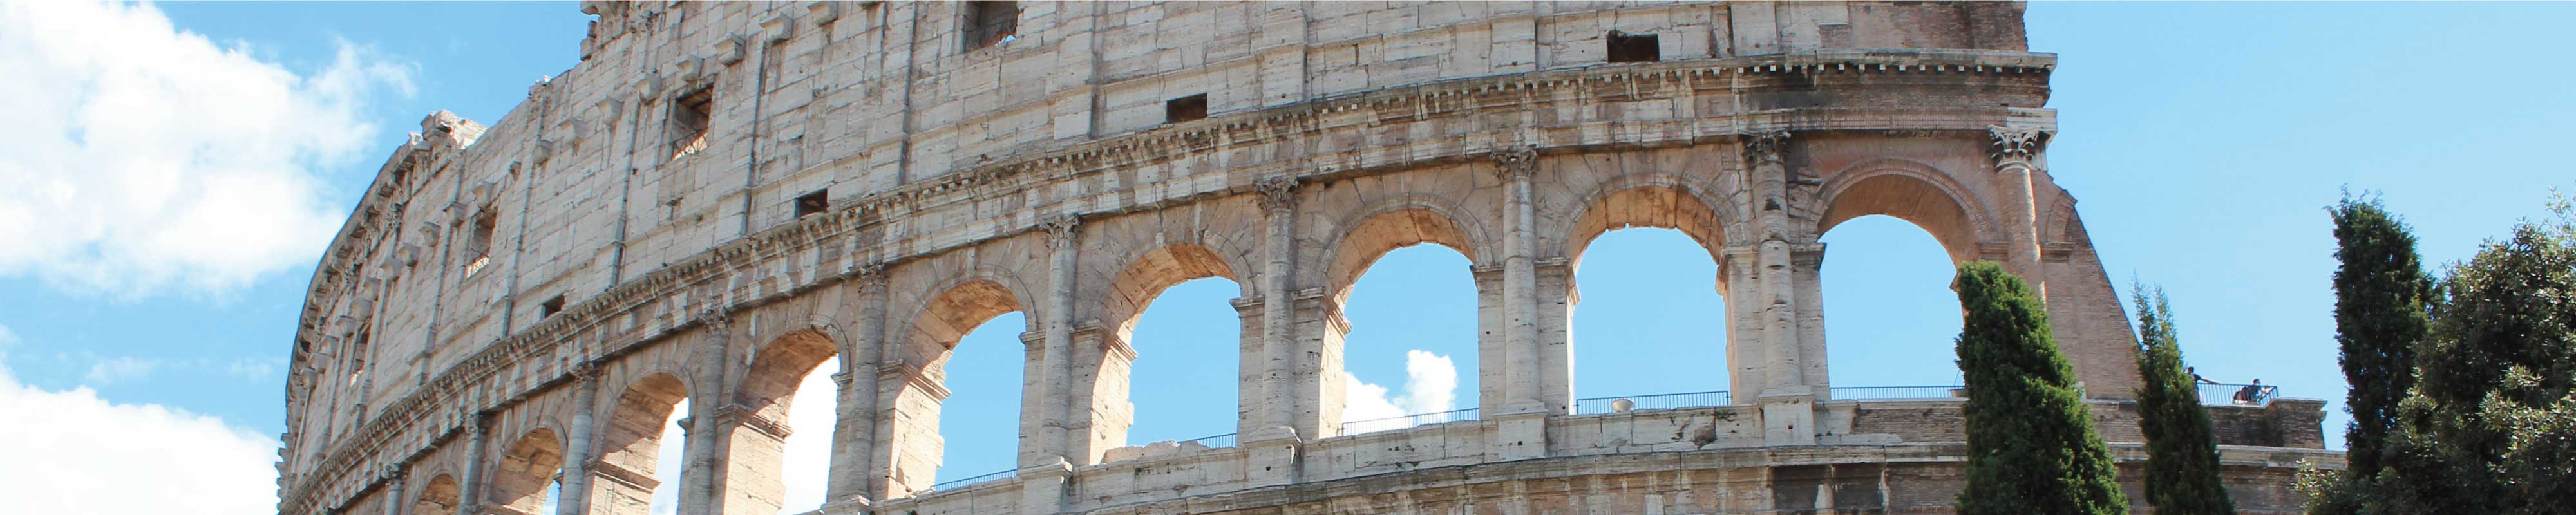 Depósito de Bagagem | Coliseu  em Rome - Nannybag